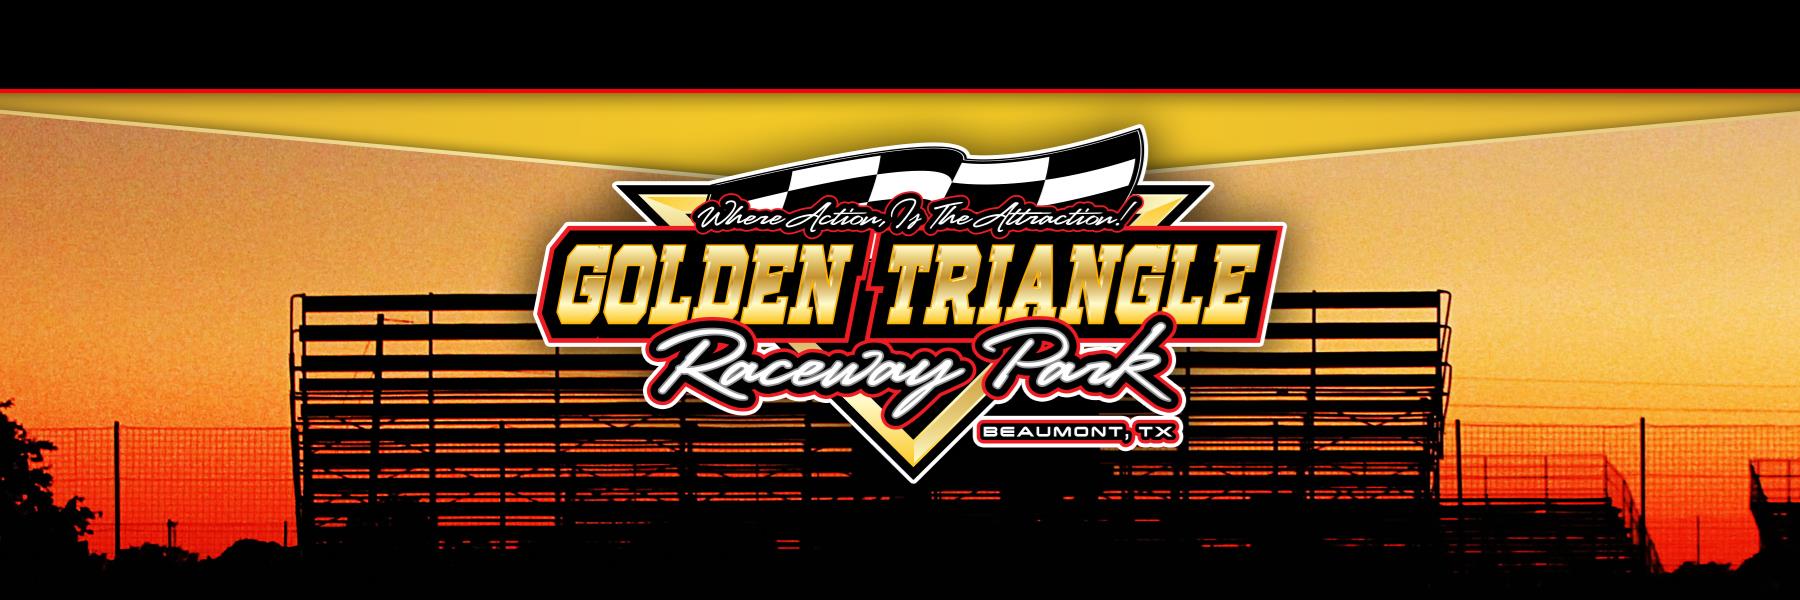 6/29/2019 - Golden Triangle Raceway Park